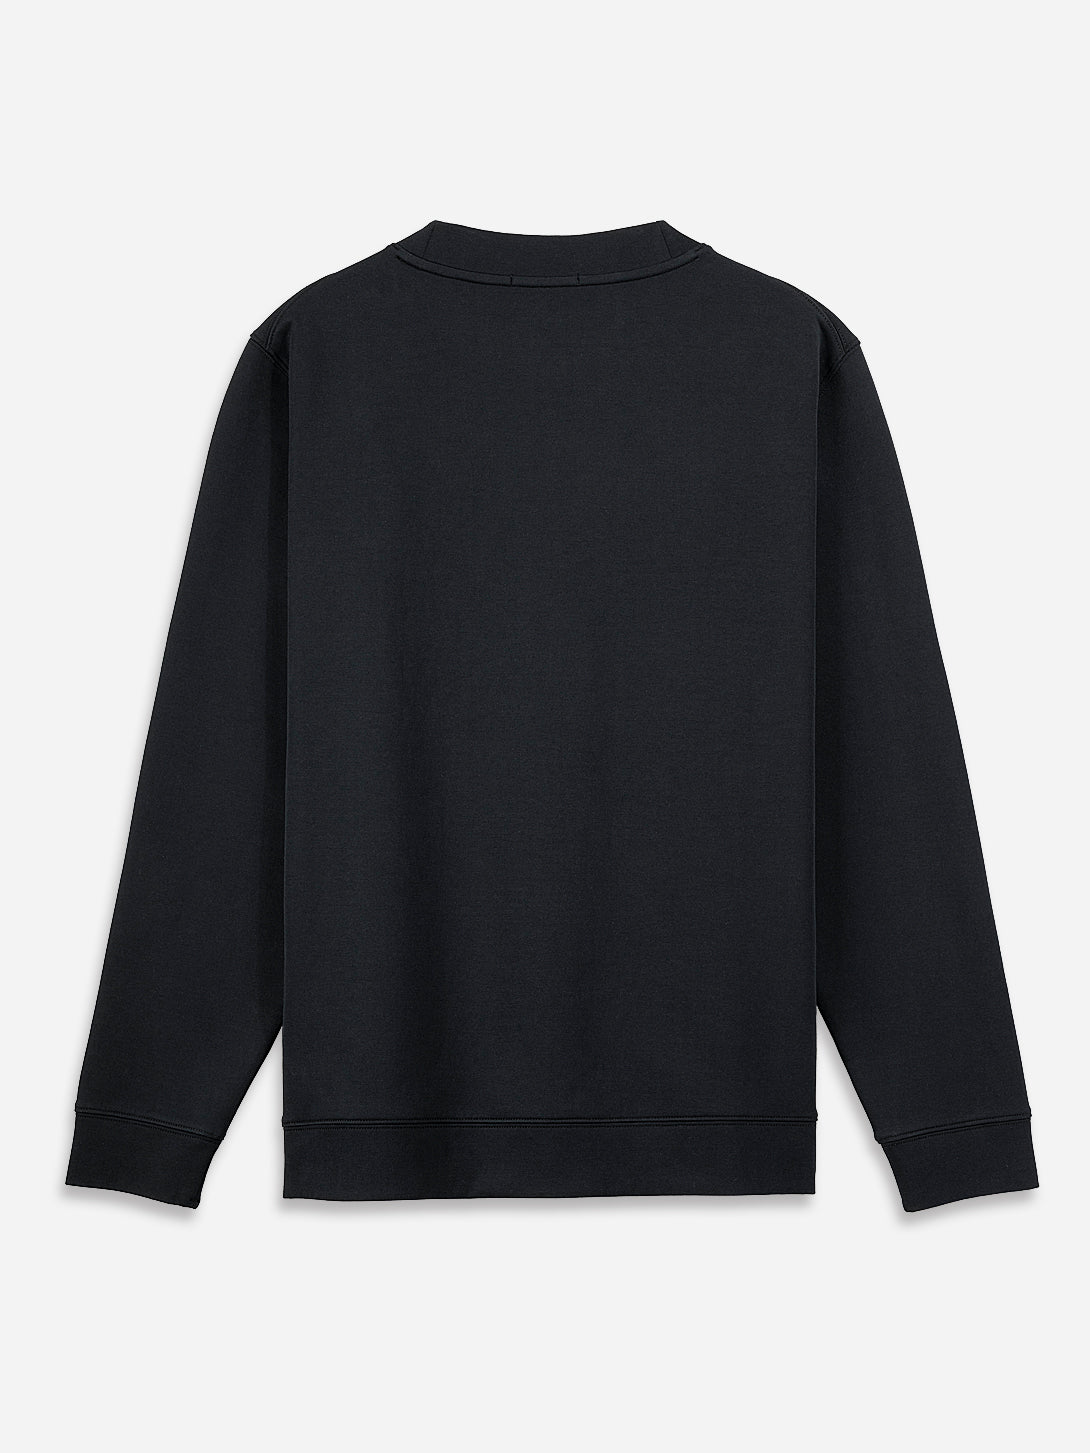 Black Astor Scuba Knit Sweatshirt Mens Pullover